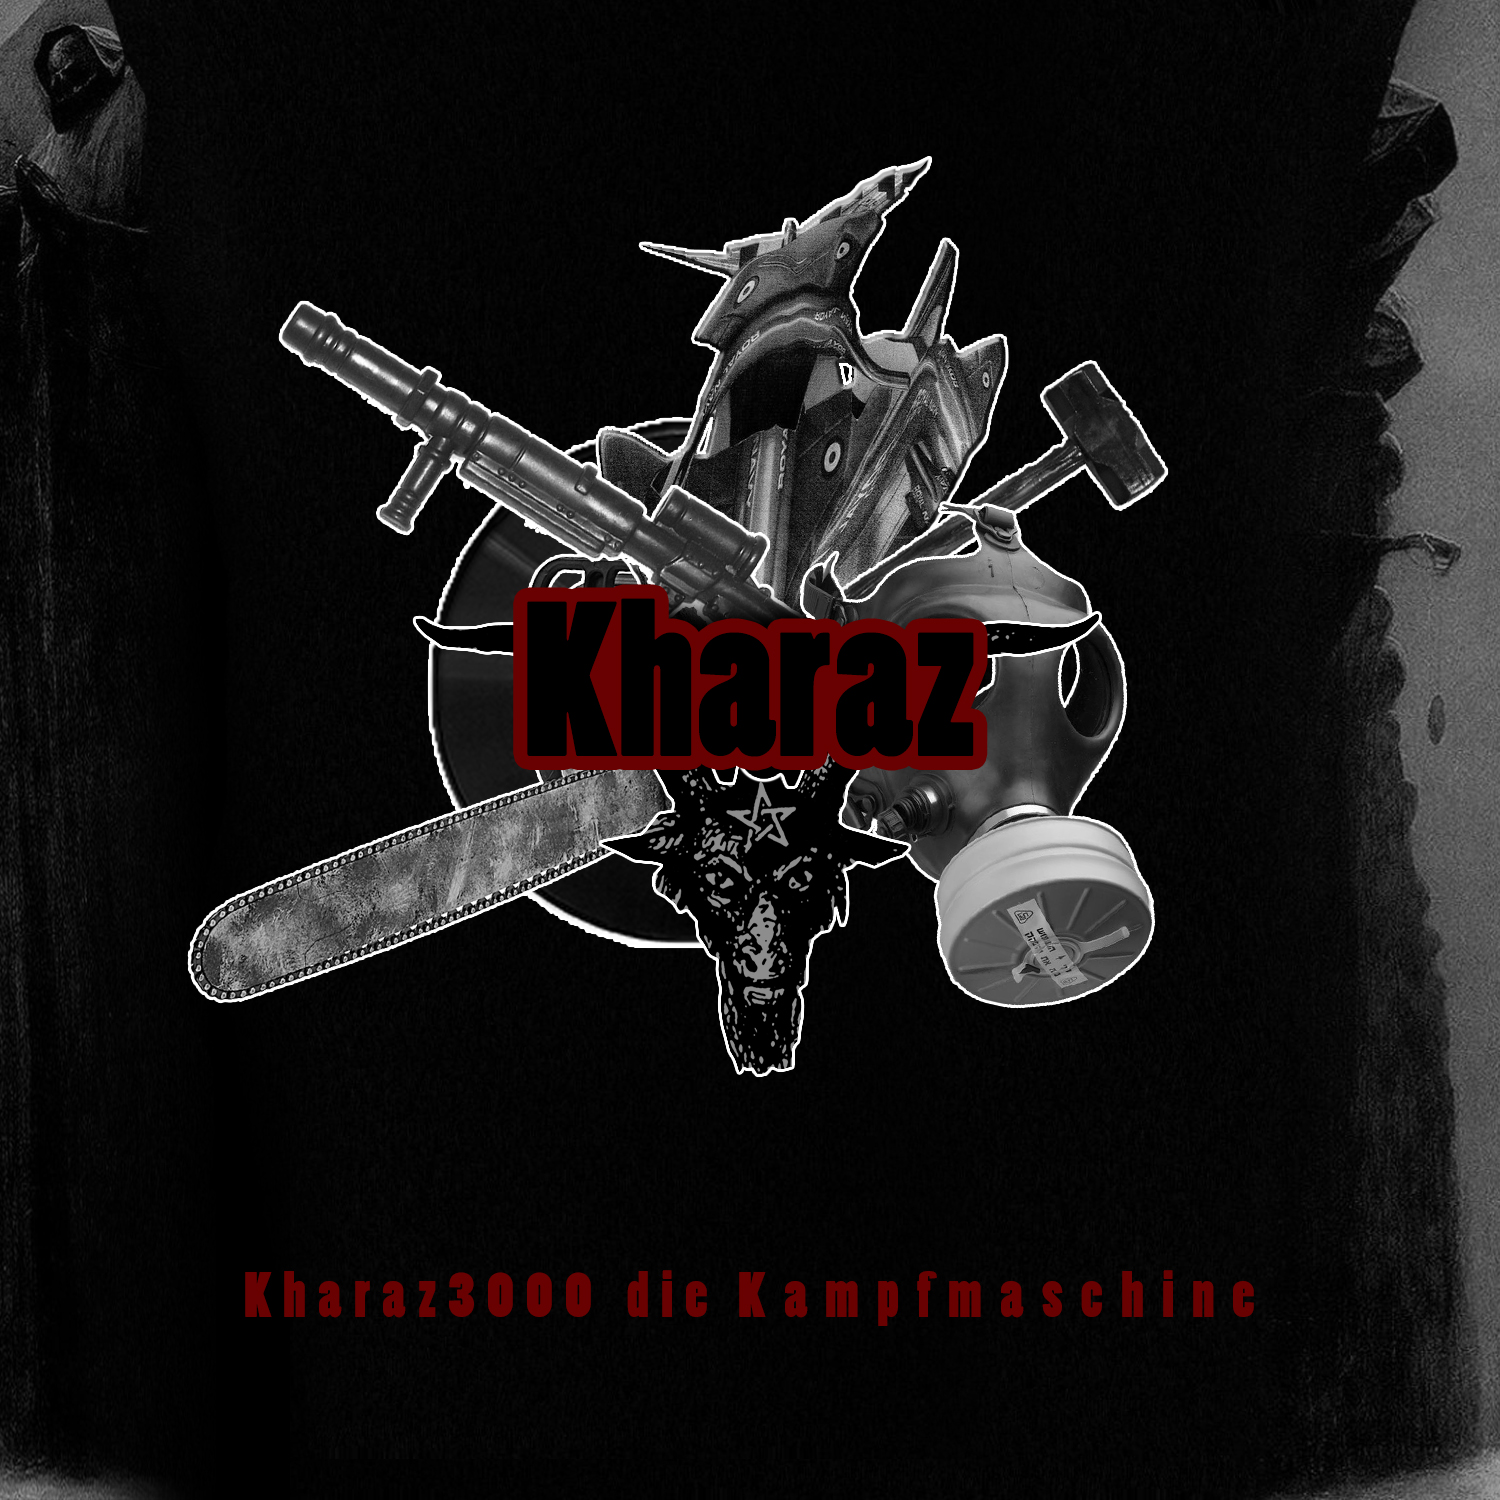 Kharaz - Kharaz3000 die Kampfmaschine